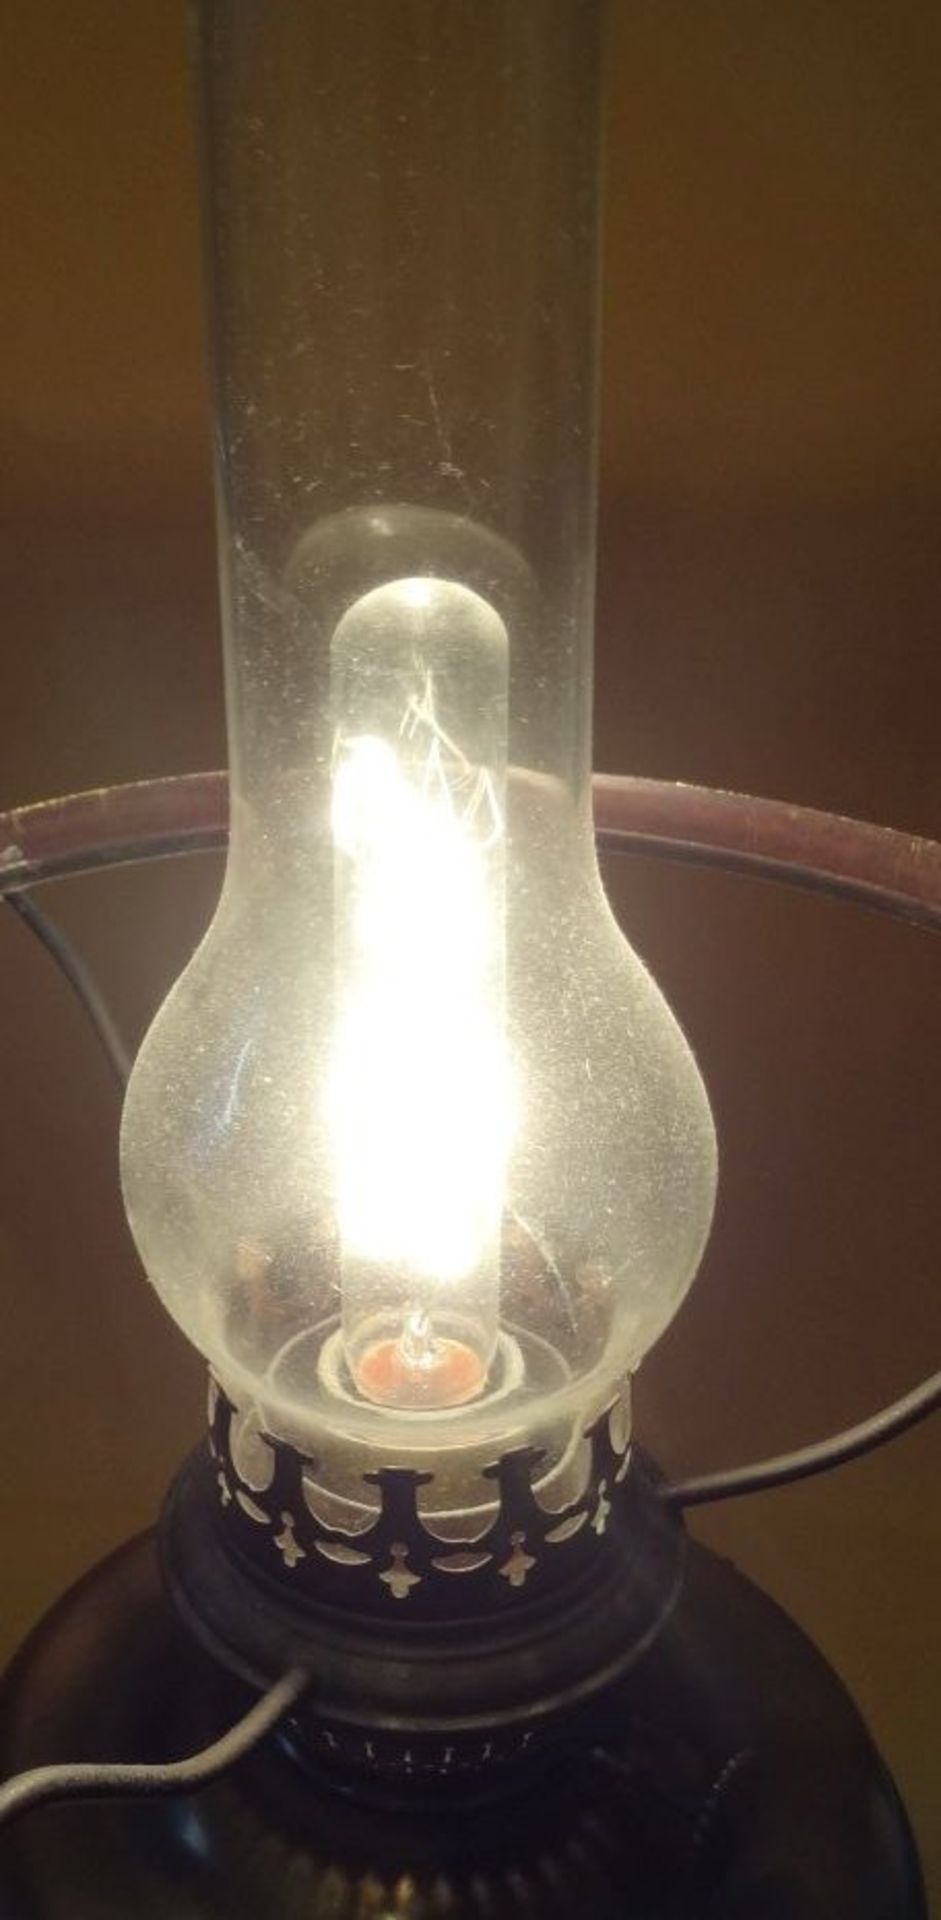 Petroleumlampe, elektrifiziert, H-43 cm - Bild 2 aus 5